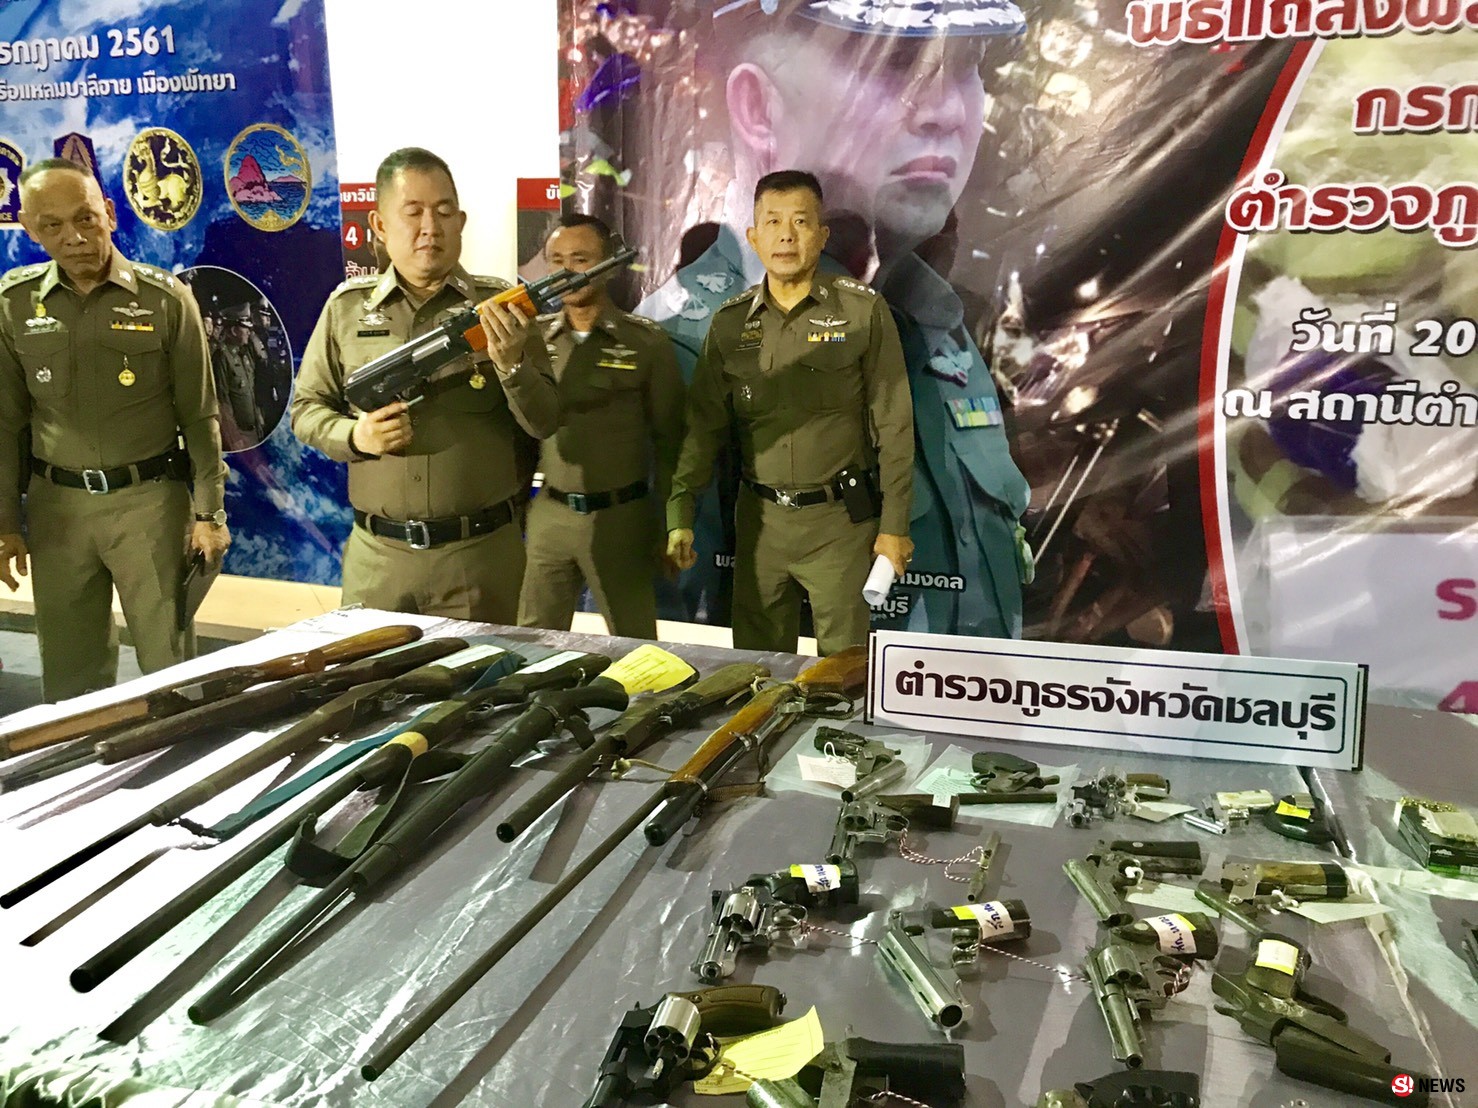 ผู้การชลบุรี แถลงผลการกวาดล้างอาชญากรรม ปิดคดีอาวุธปืน ยาเสพติด